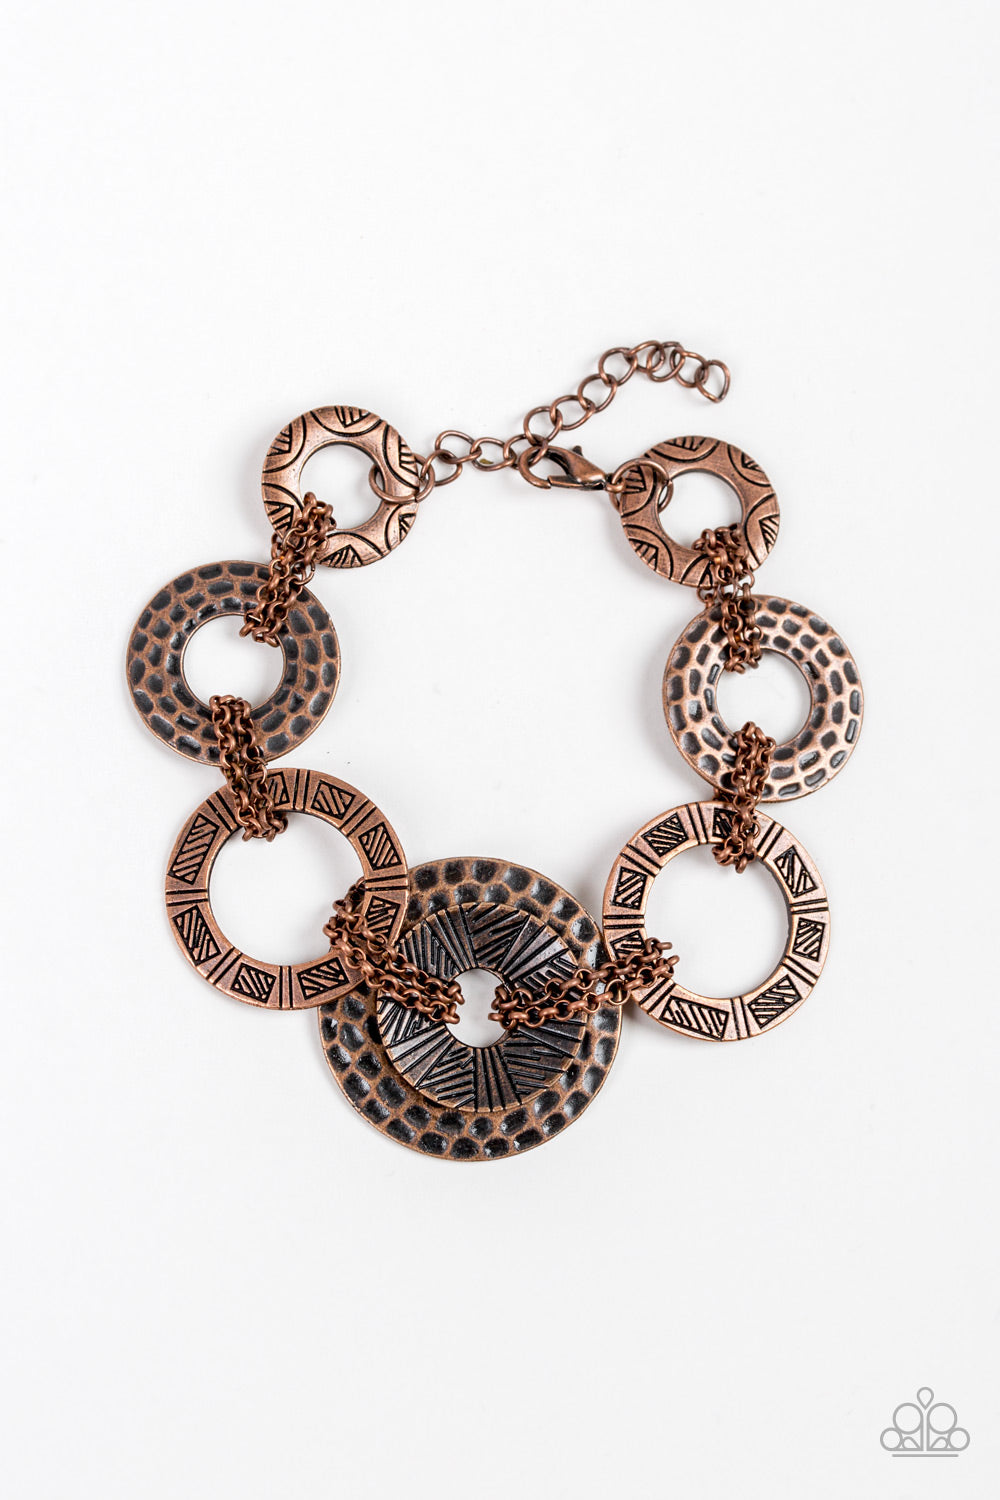 Paparazzi Bracelet ~ Way Wild - Copper Tribal Bracelet